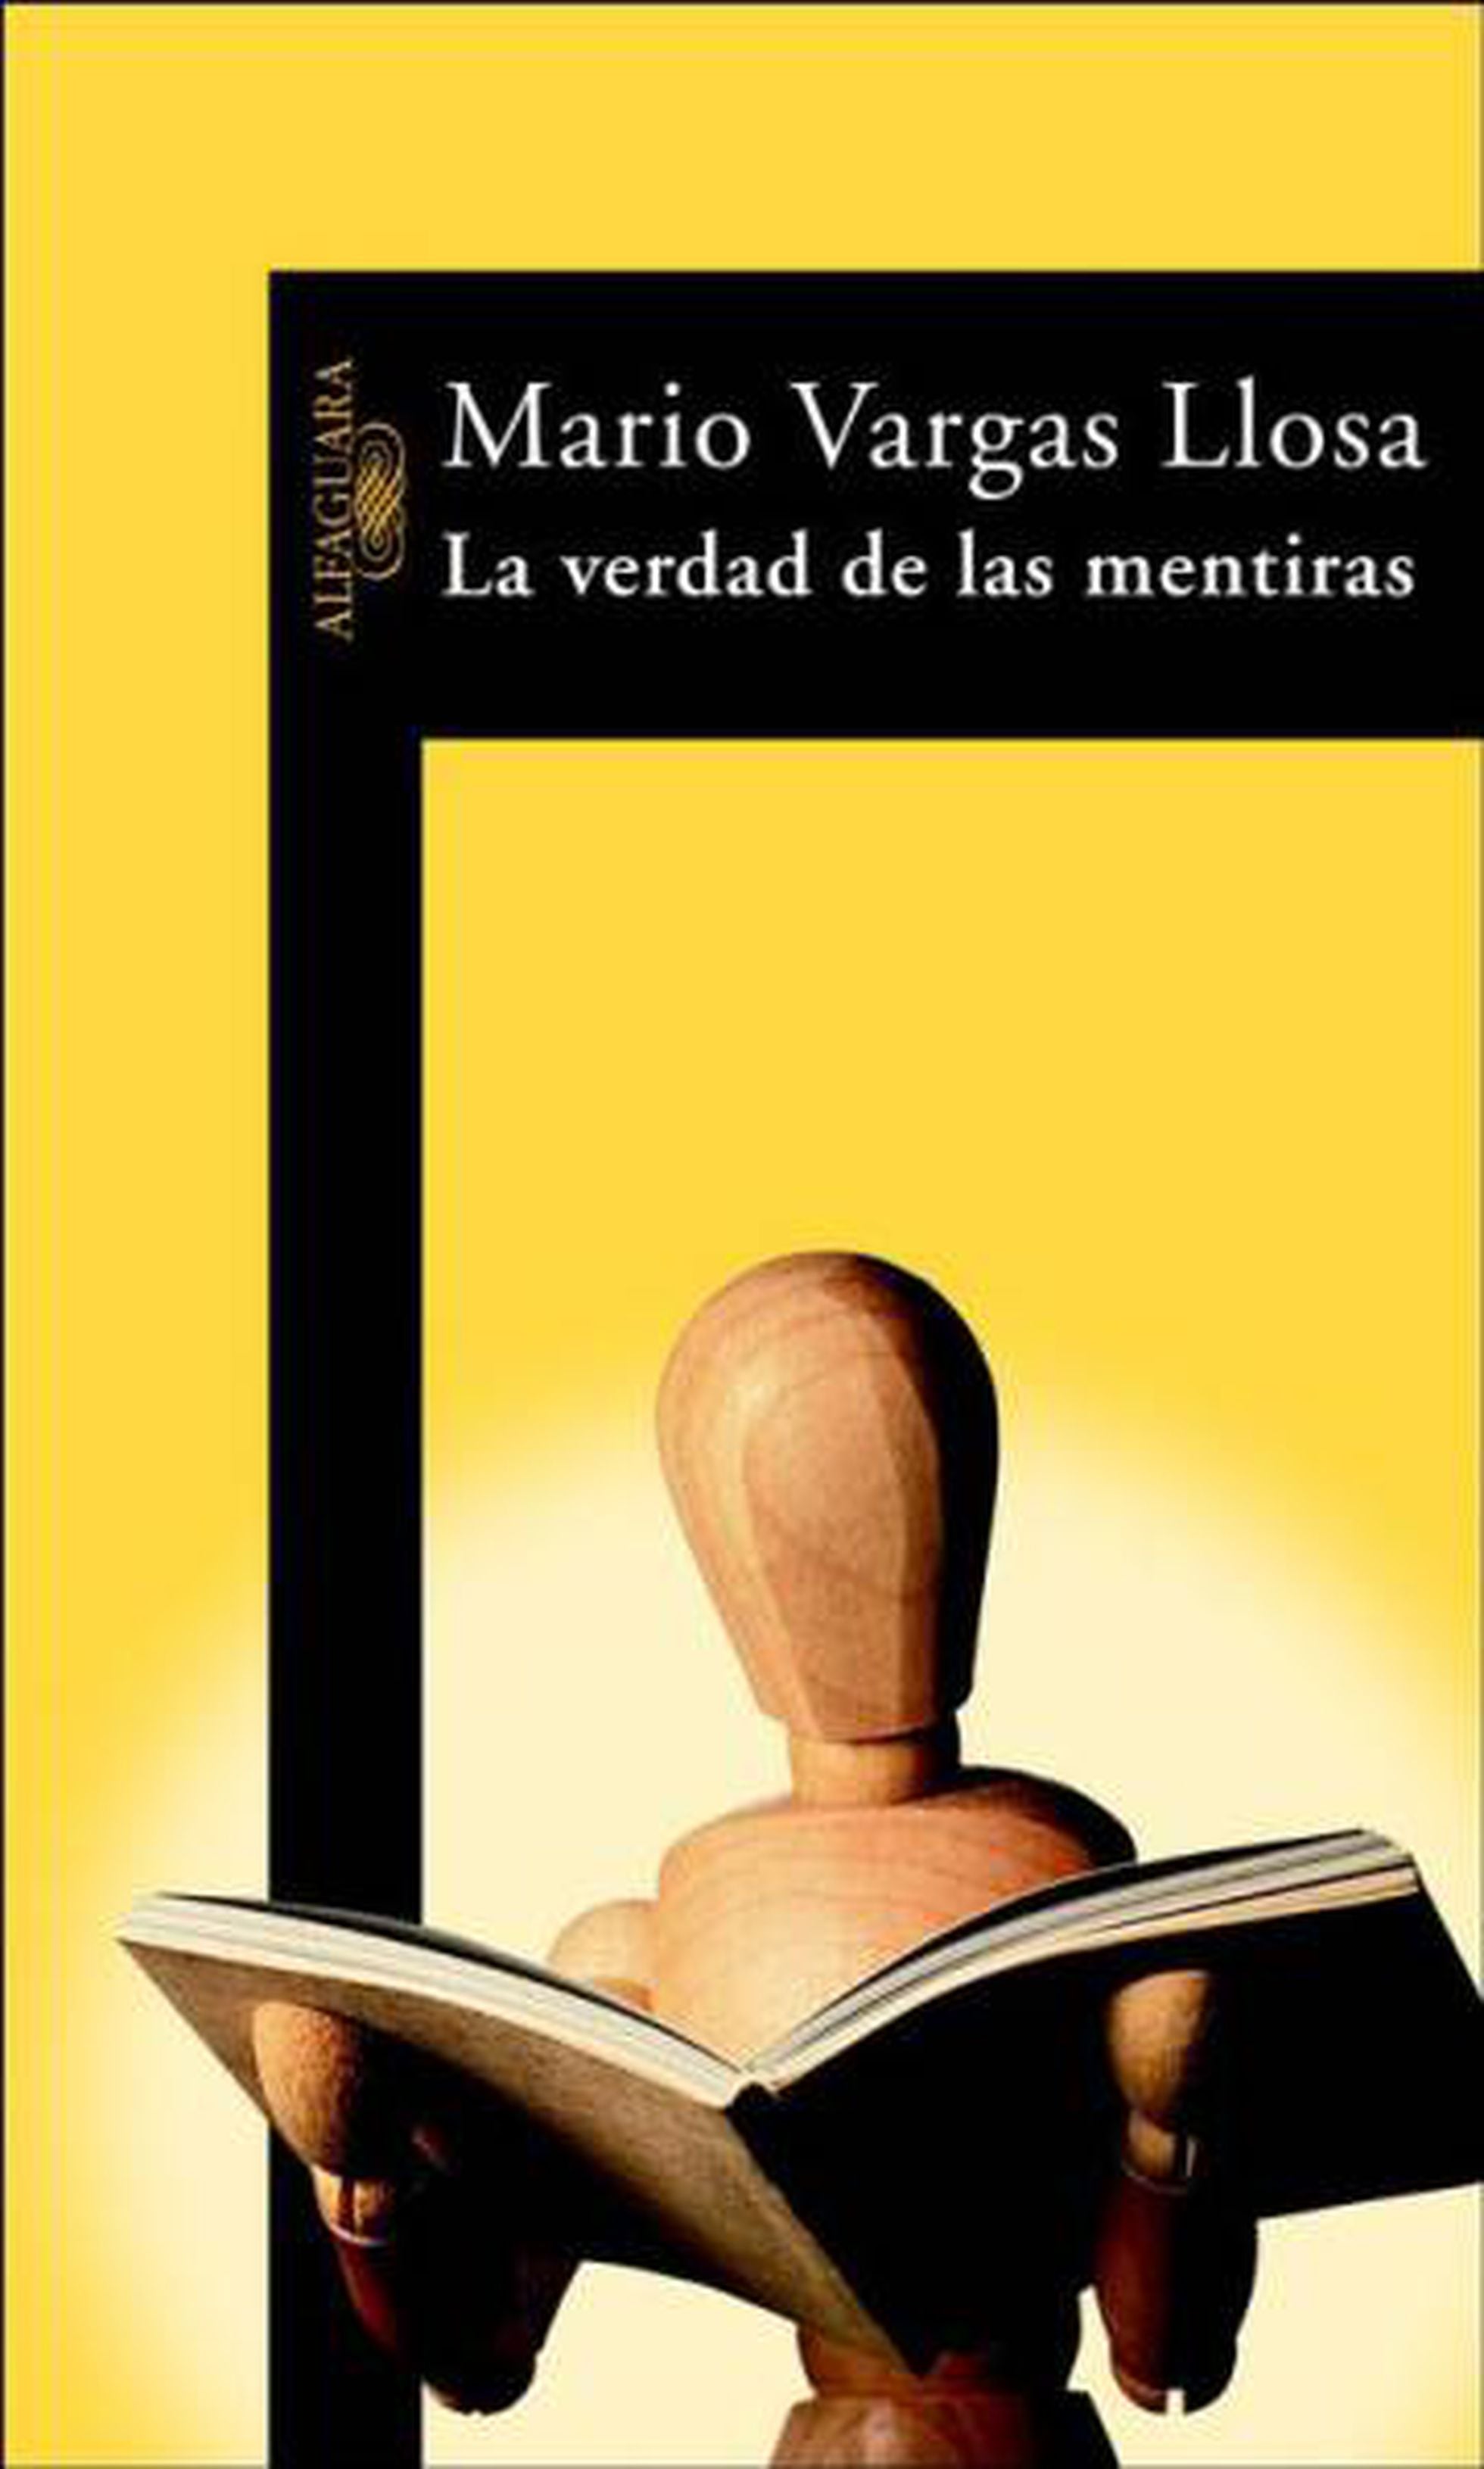 Los cinco libros de Mario Vargas Llosa, Juan Cruz | Escaparate | EL PAÍS